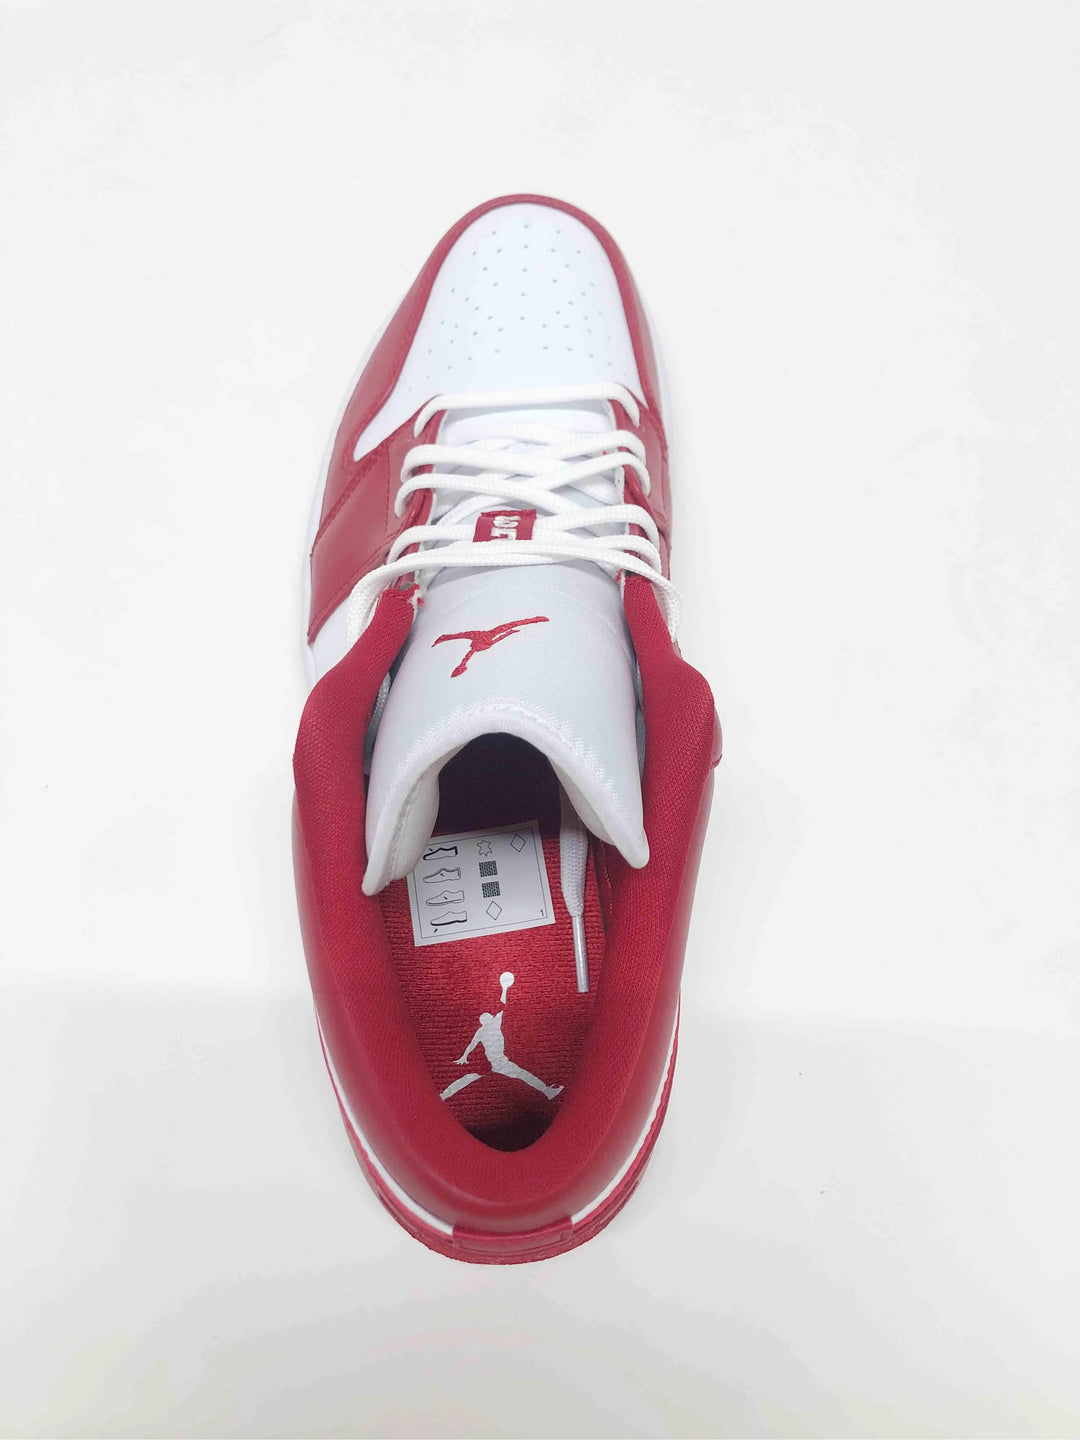 Nike Air Jordan 1 Low Gym Red [Flawed] Prior